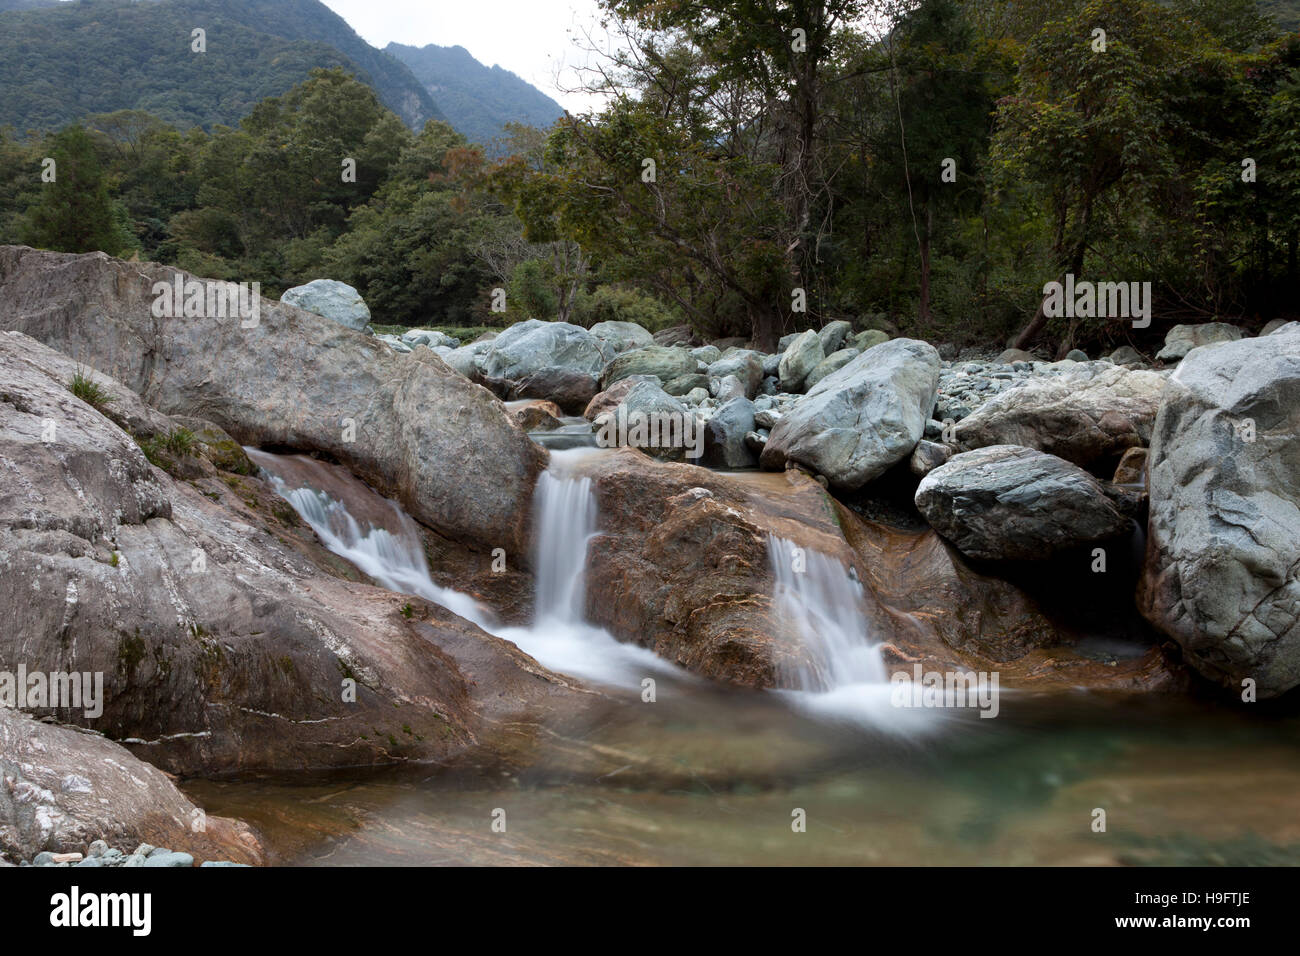 Une cascade sur Bai Shui Jiang, une réserve naturelle dans la province de Gansu dans l'ouest de la Chine. Banque D'Images